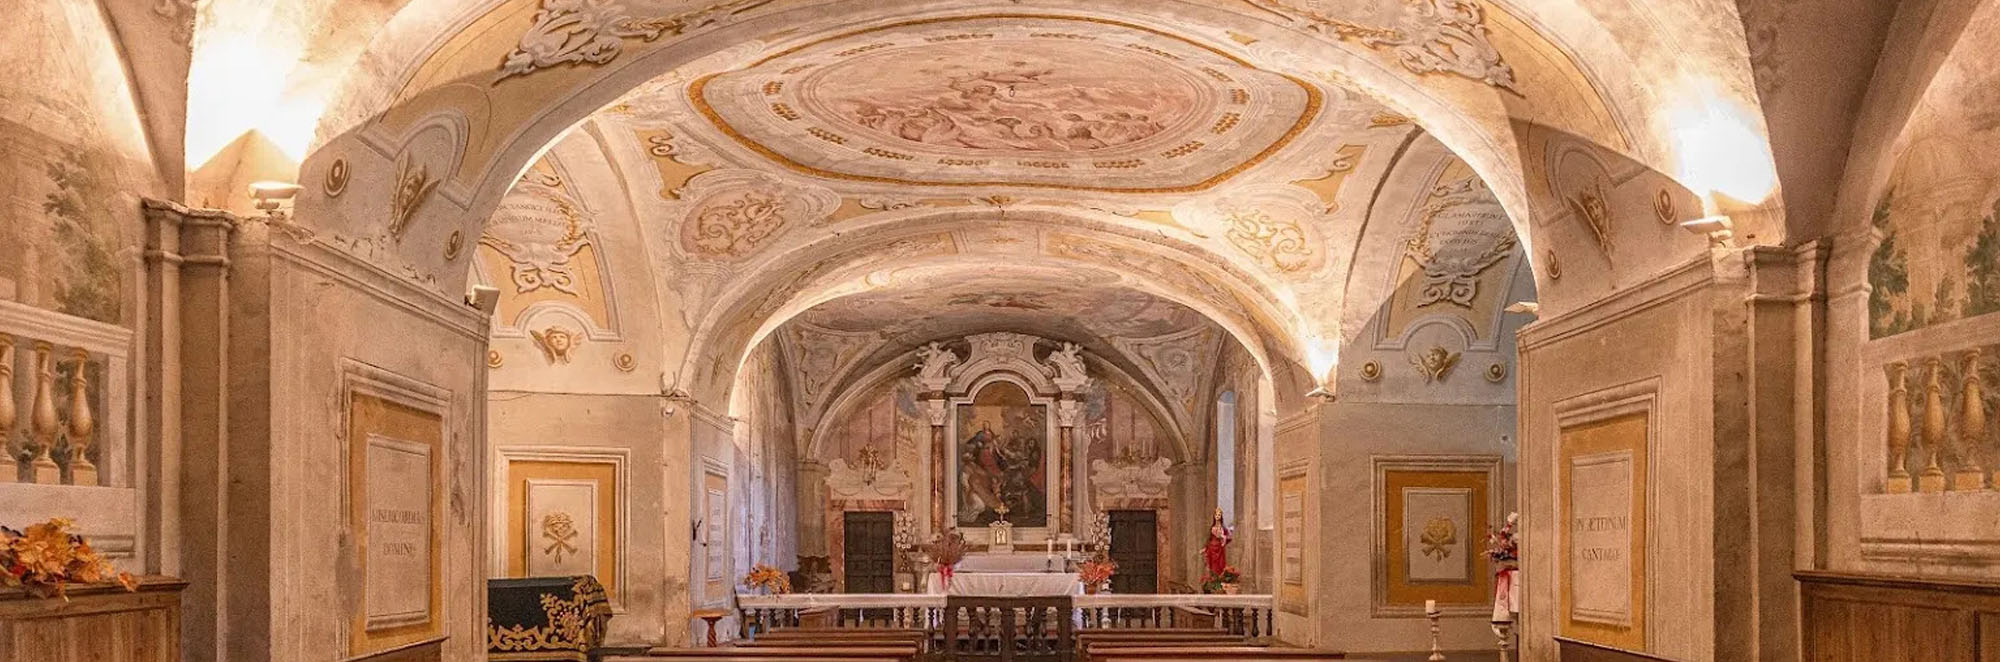 Visit Colle di Val d'Elsa borgo toscano Cripta della Misericordia